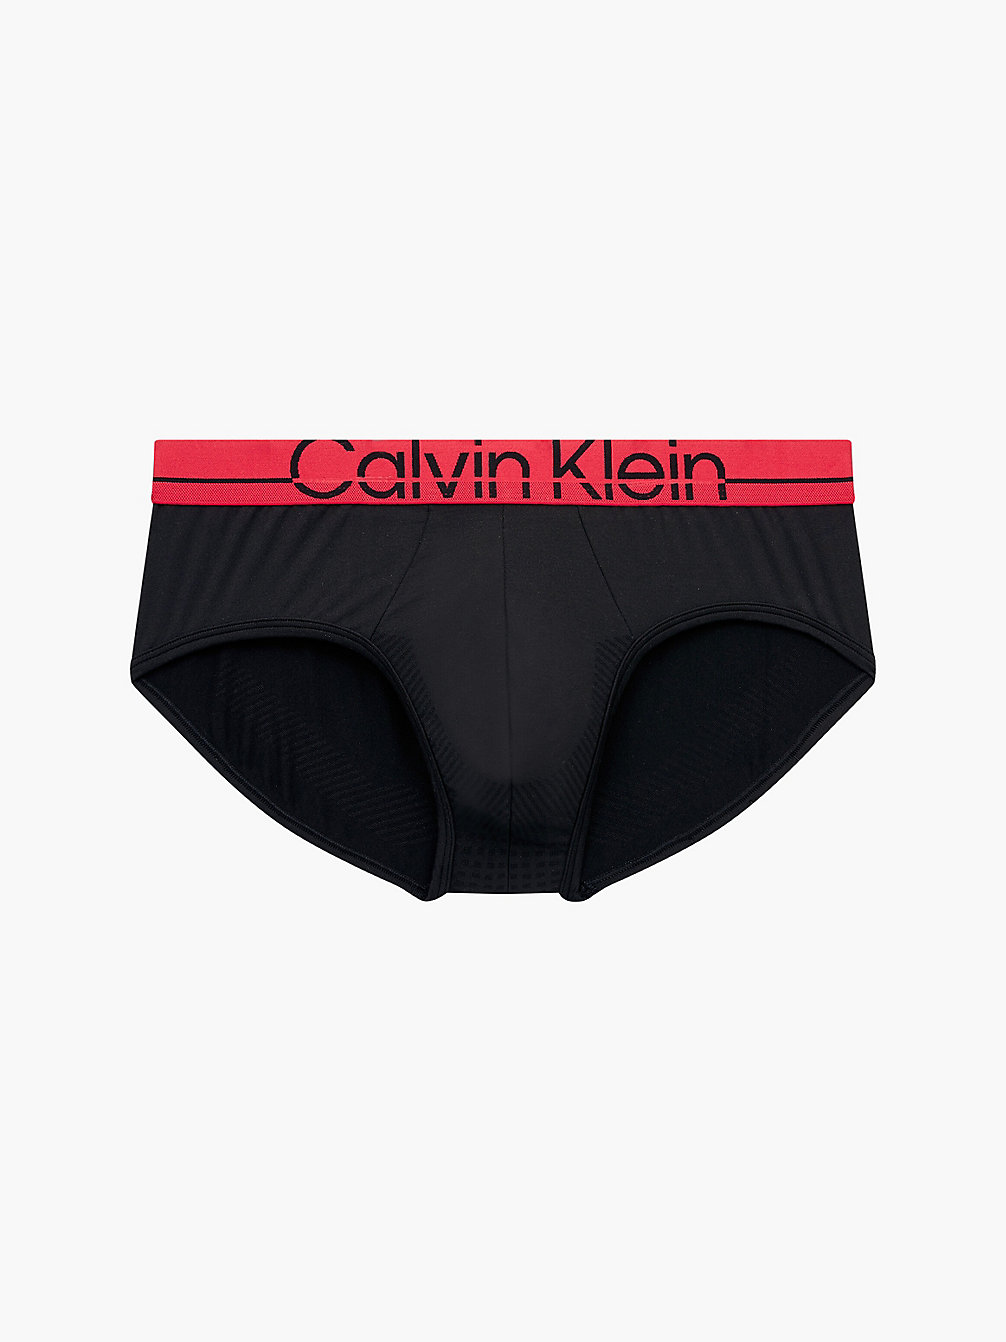 BLACK Slip - CK Pro Fit undefined Herren Calvin Klein